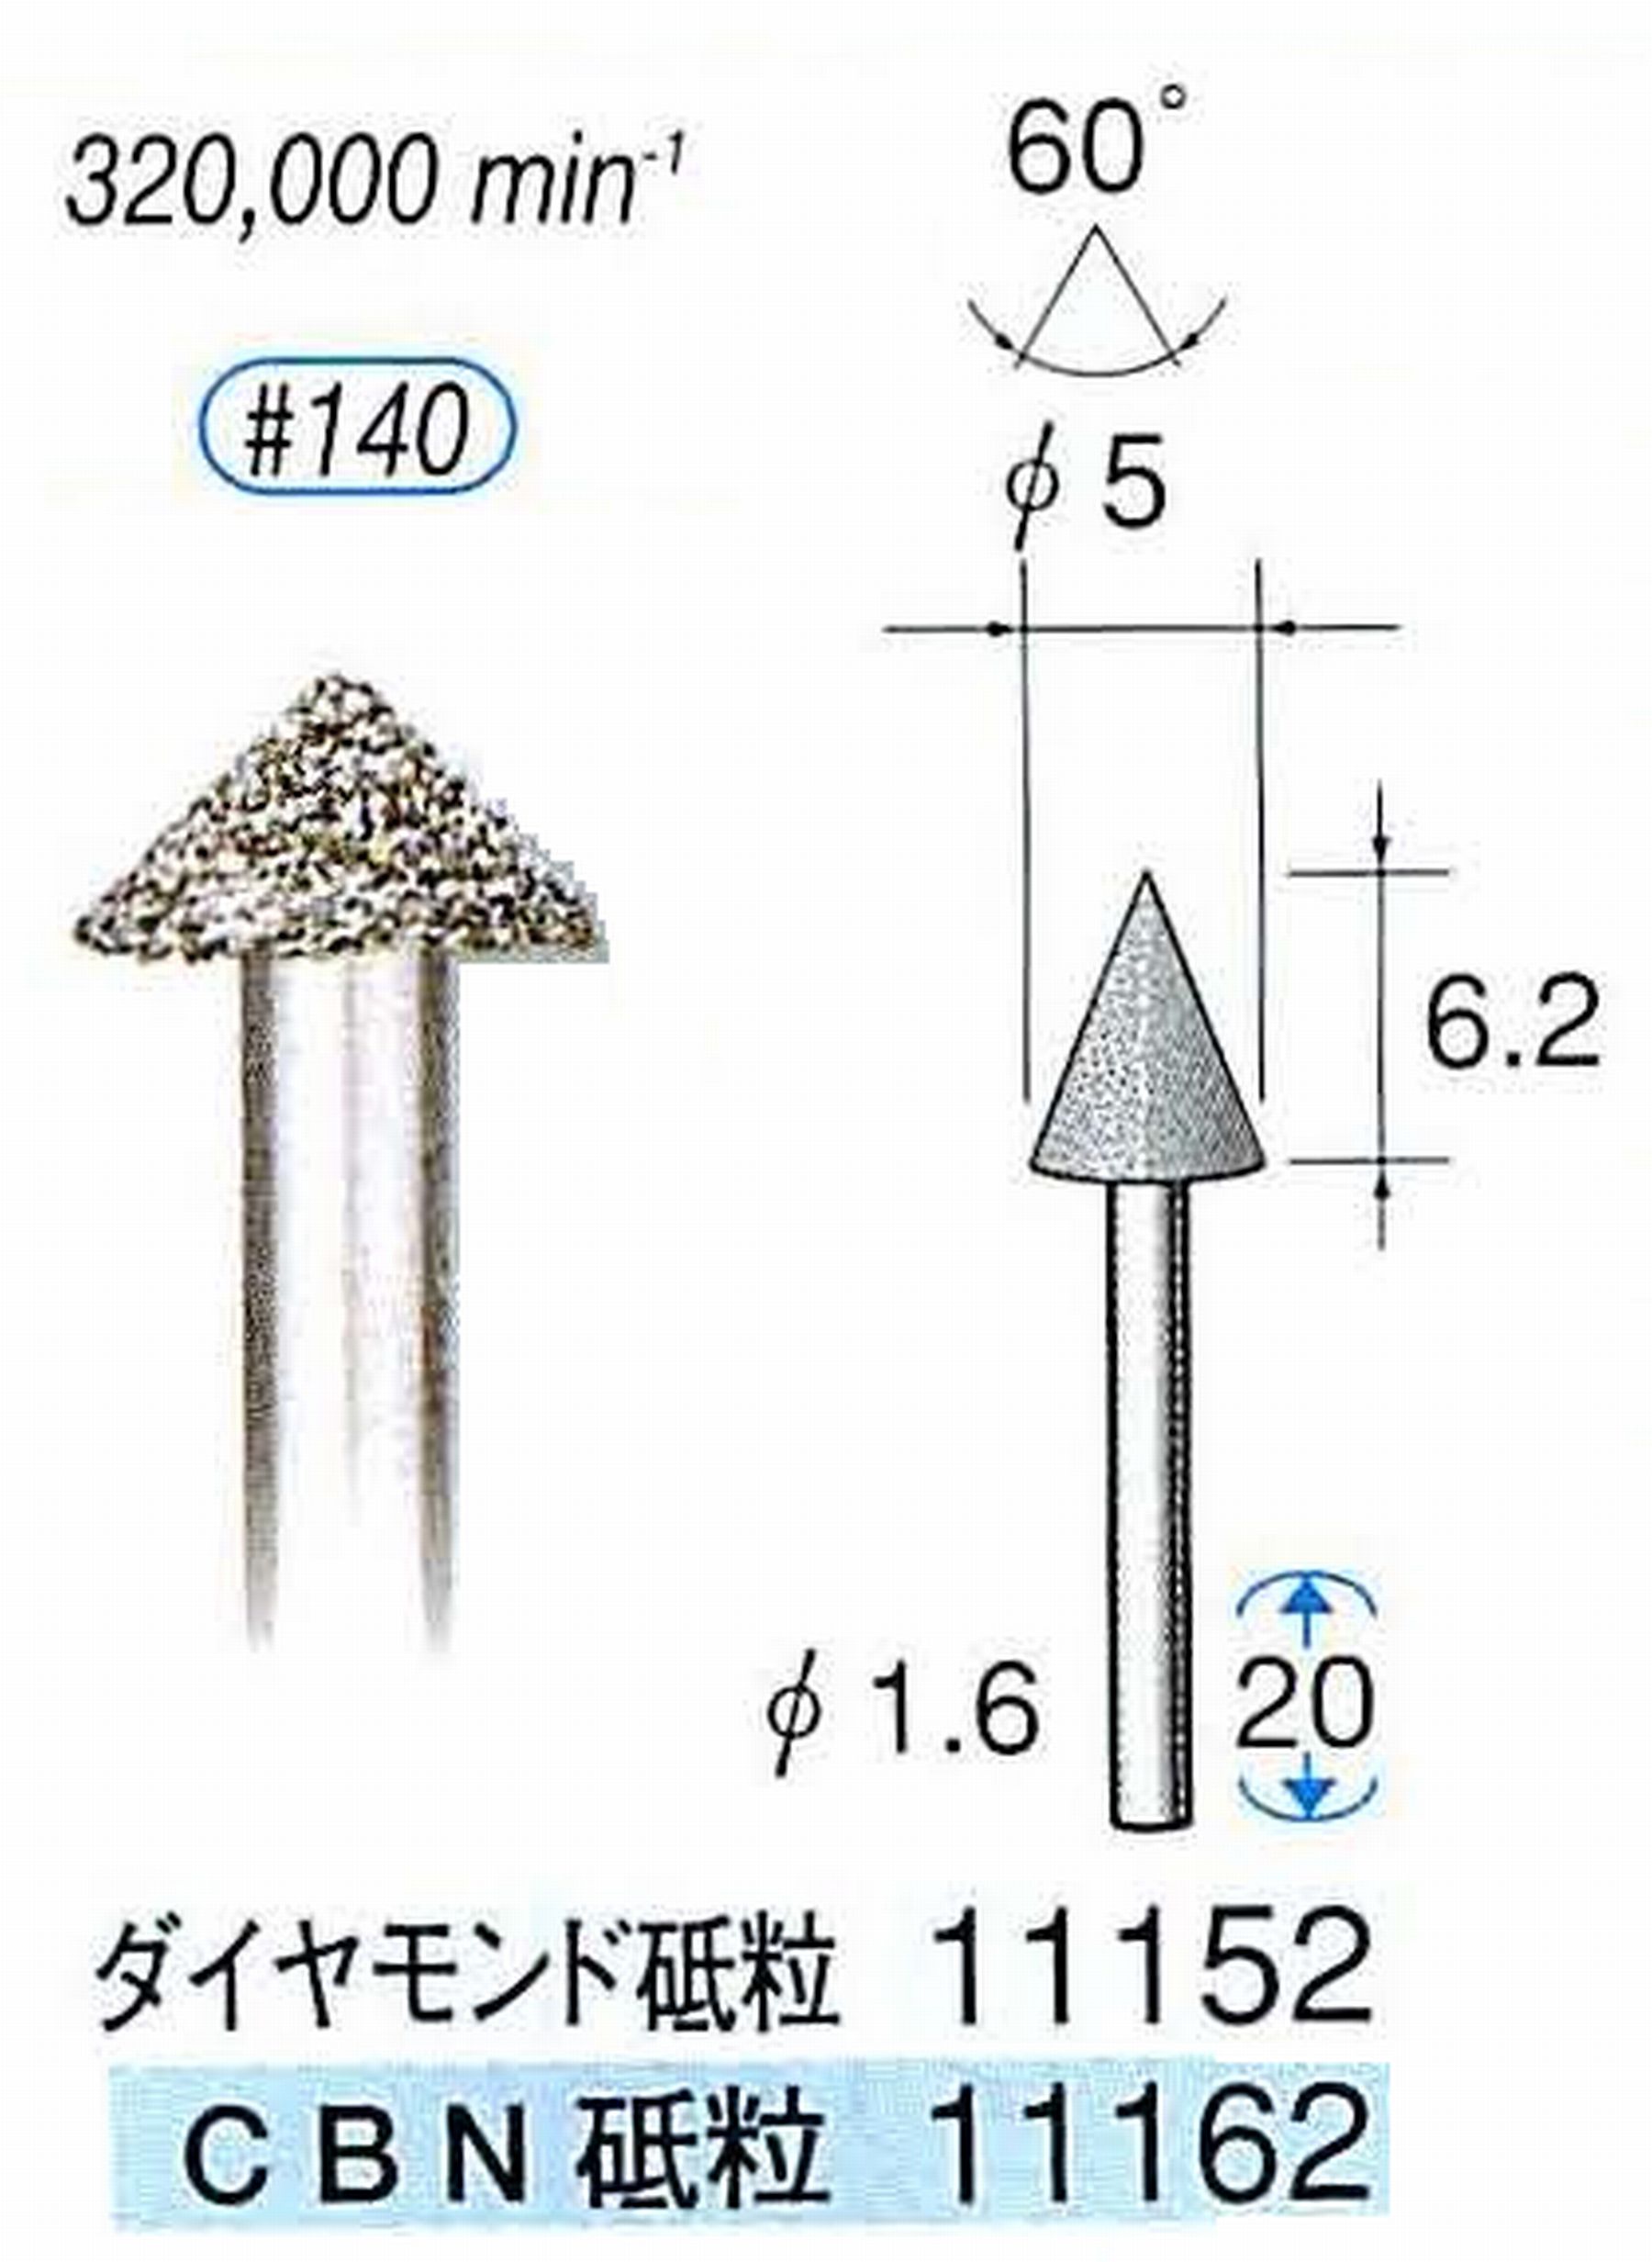 ナカニシ/NAKANISHI 電着ダイヤモンドバー(ミニチュアタイプ)ダイヤモンド砥粒 軸径(シャンク)φ1.6mm 11152